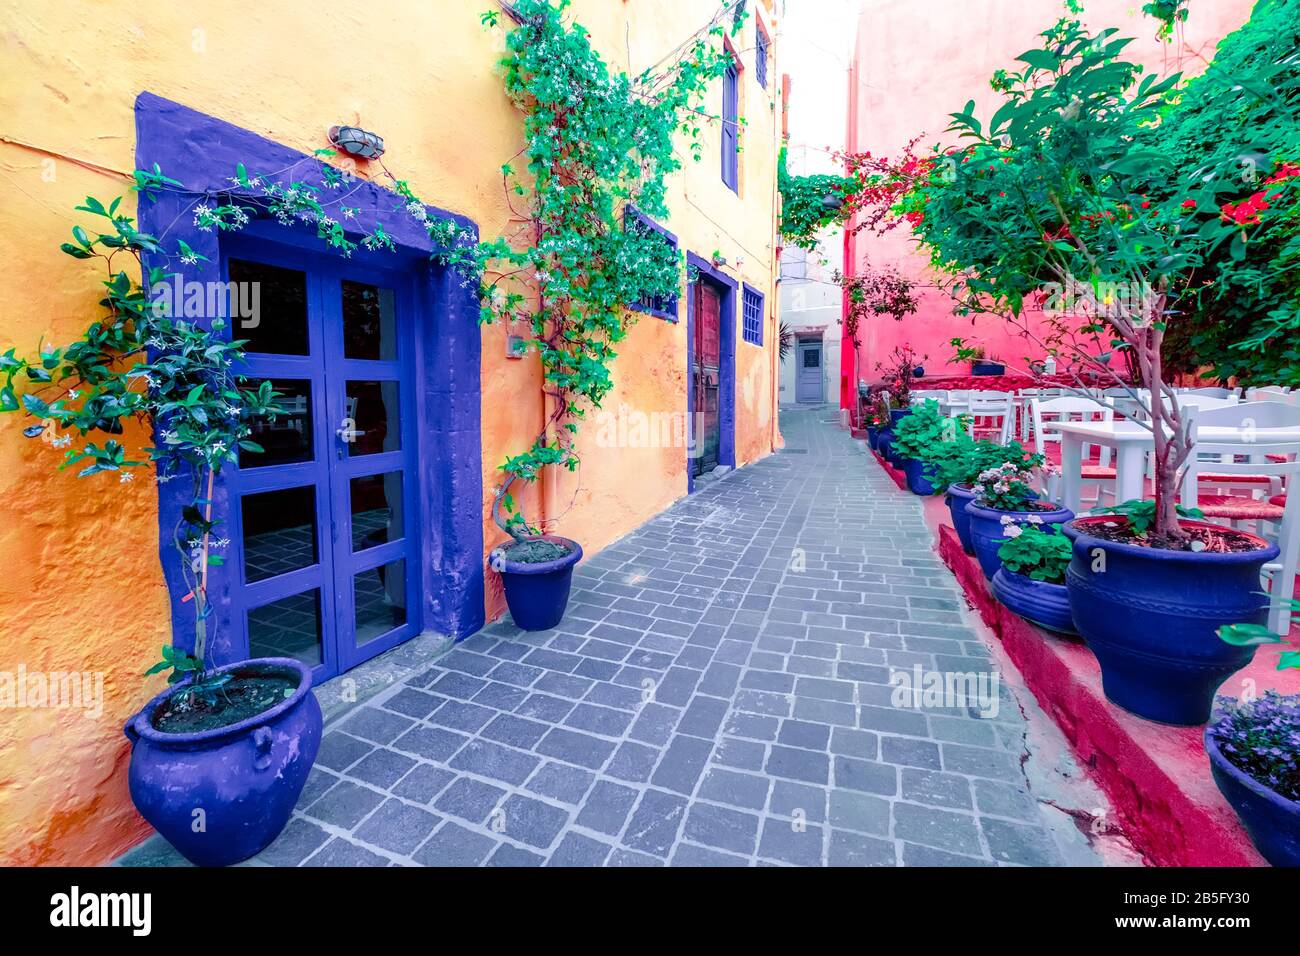 Café und Restaurants in den faszinierenden engen Gassen des beliebten Reiseziels auf der Insel Crete. Griechenland. Traditionelle Architektur und Farben der mediterranen ci Stockfoto